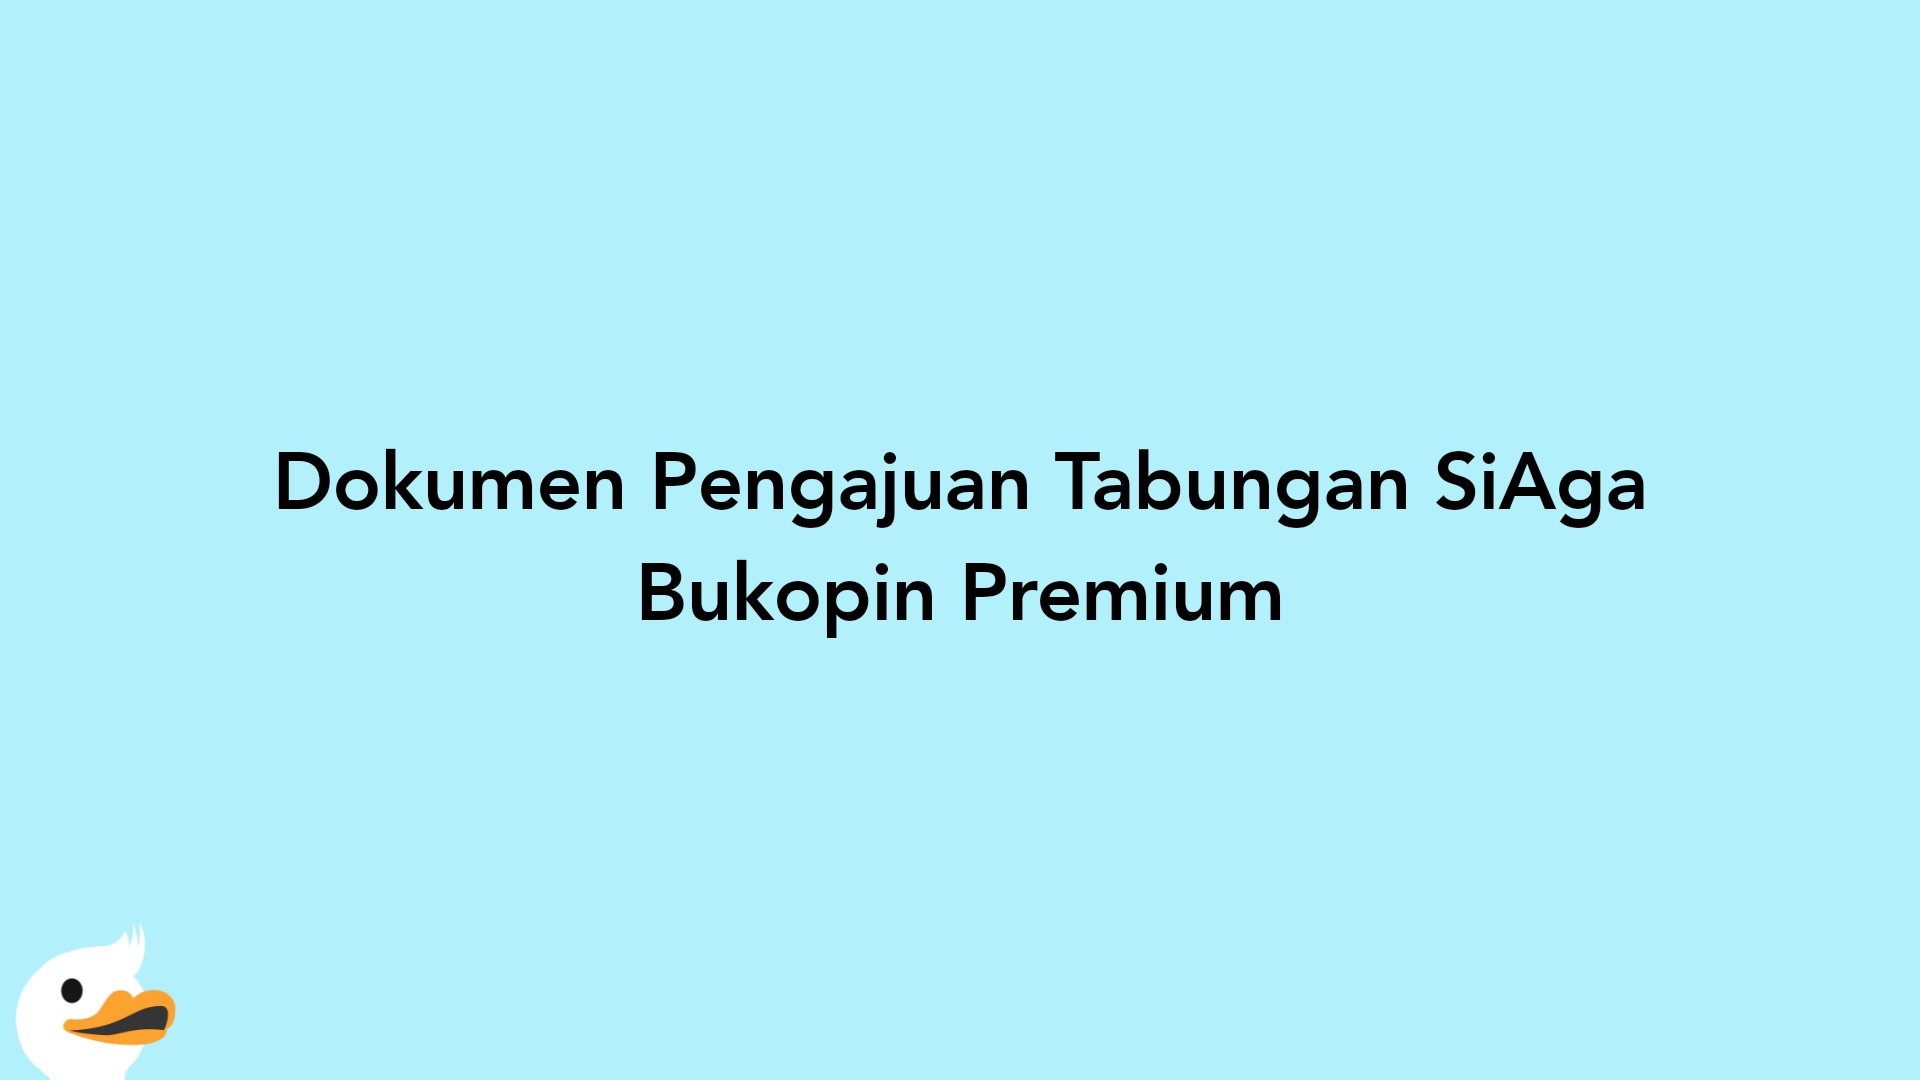 Dokumen Pengajuan Tabungan SiAga Bukopin Premium